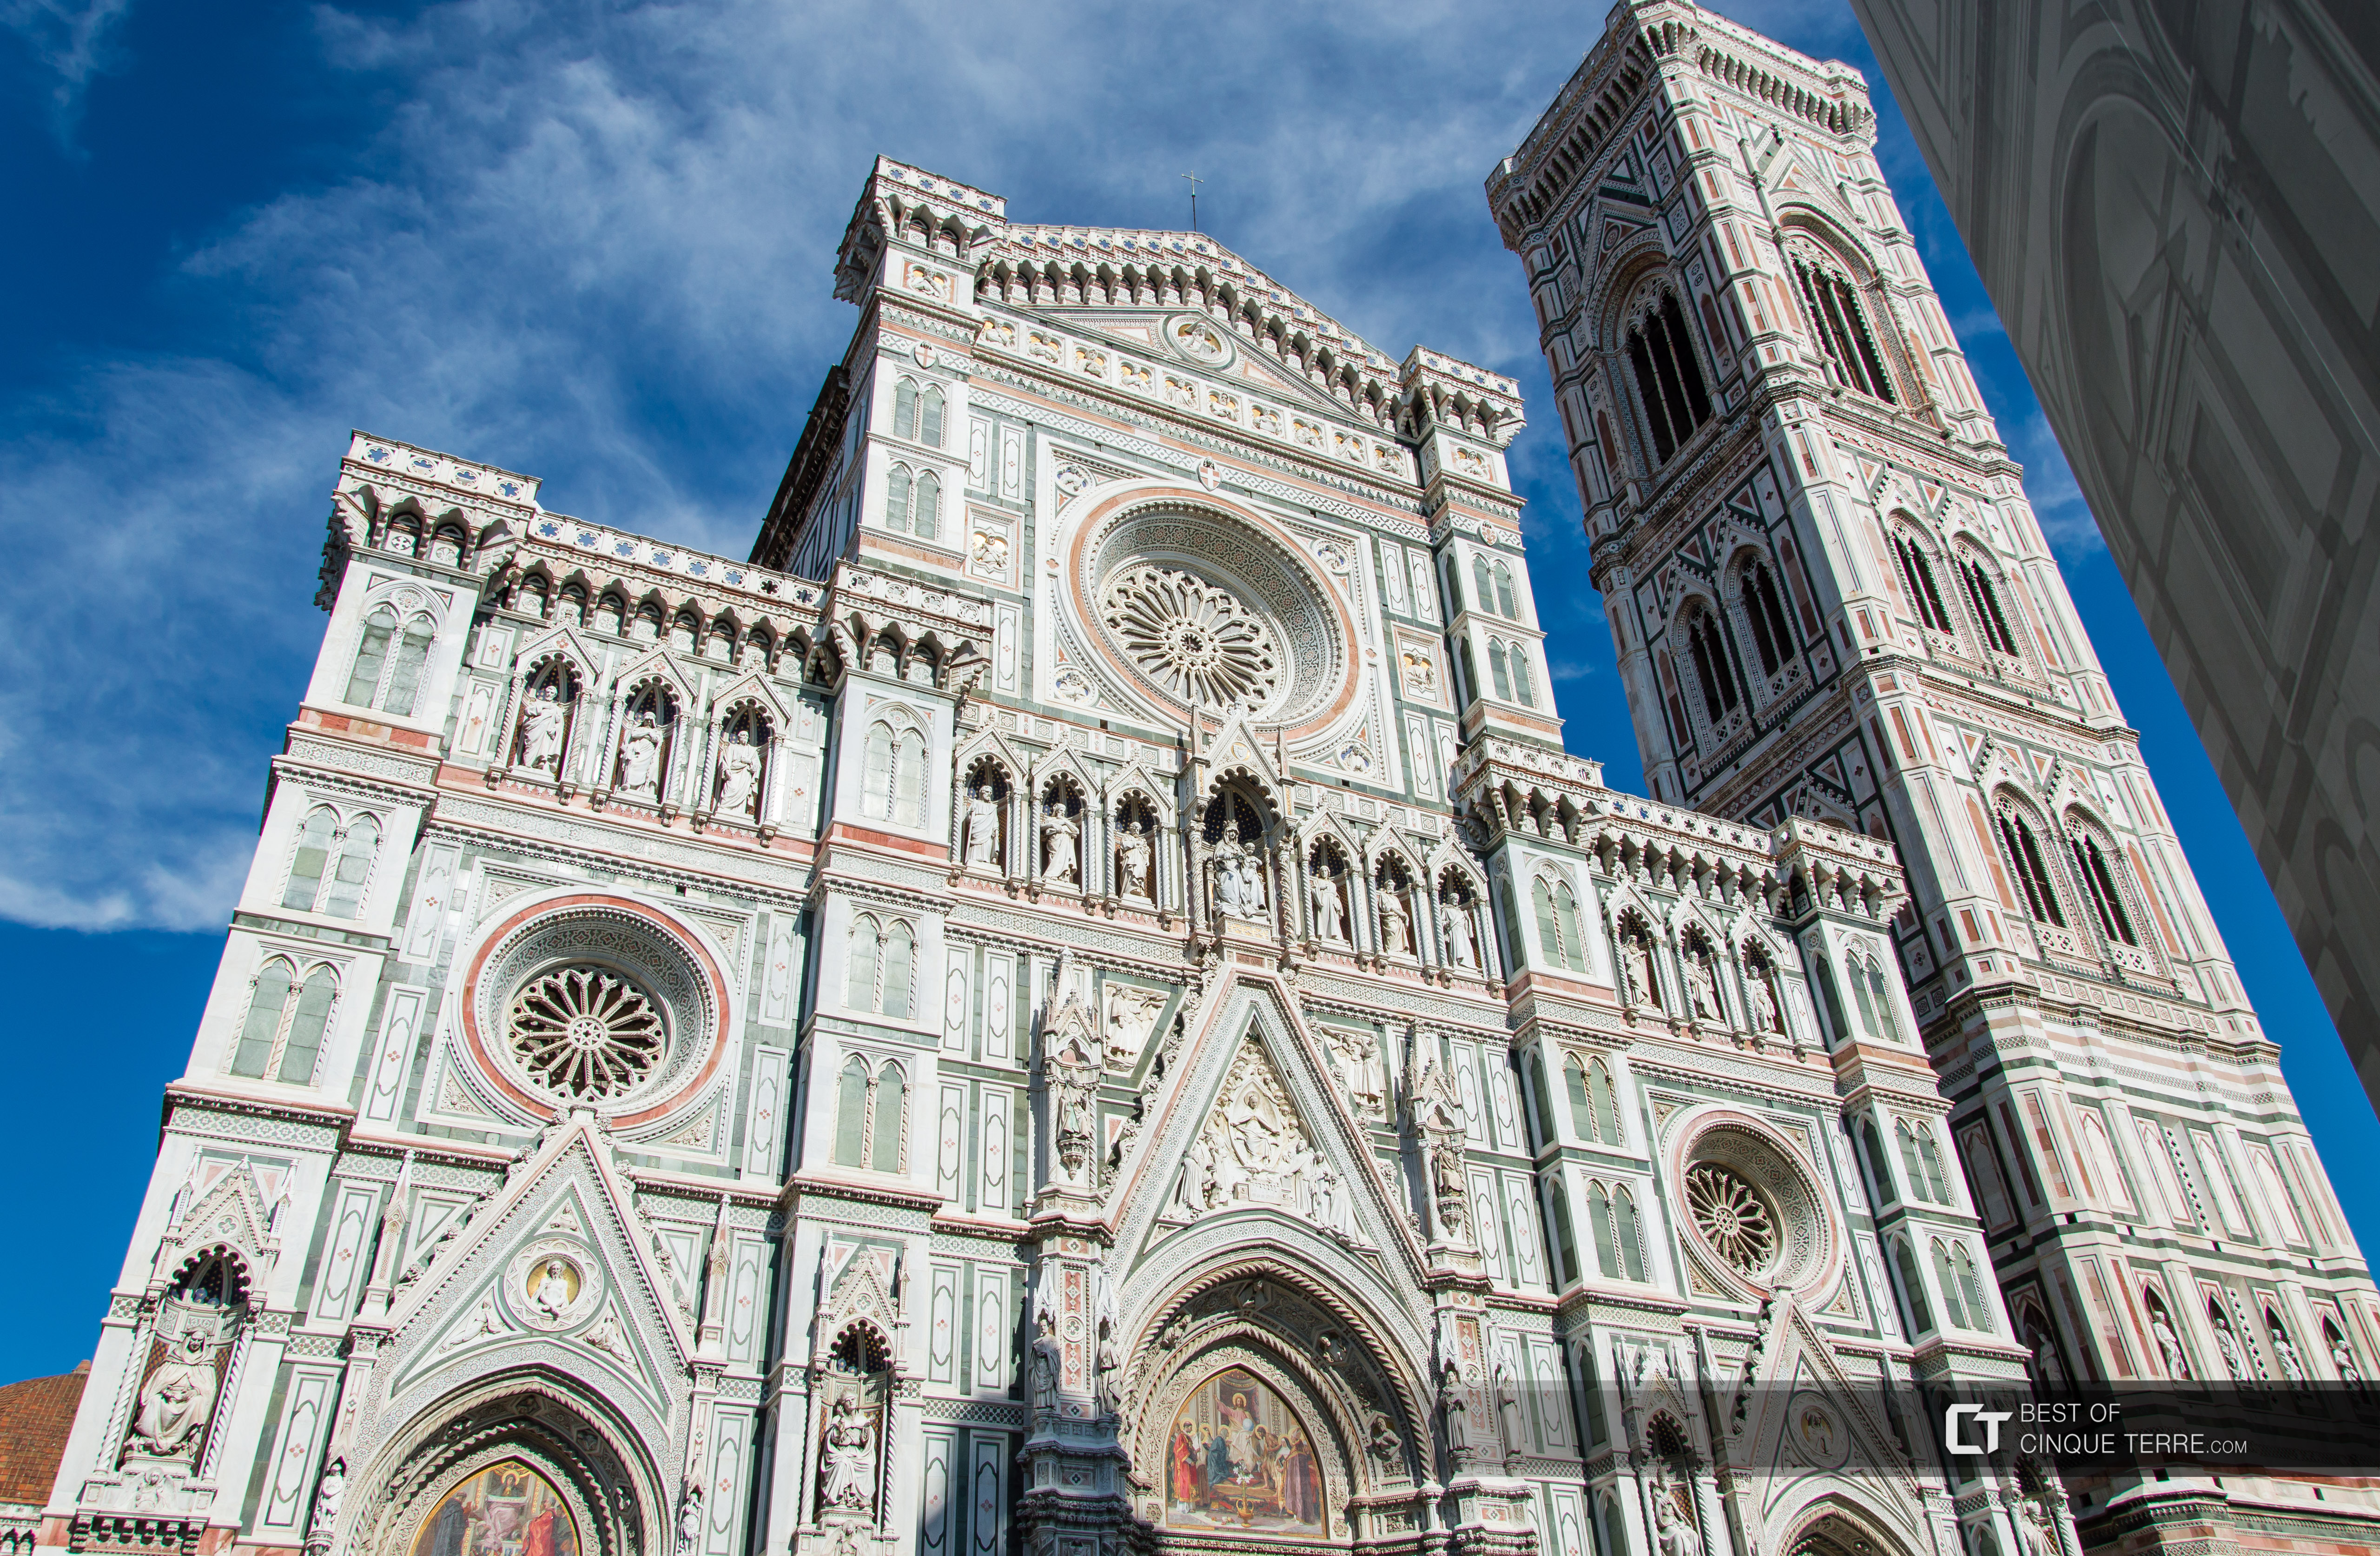 Catedrala Santa Maria del Fiore și Clopotnița Giotto, Florența, Italia